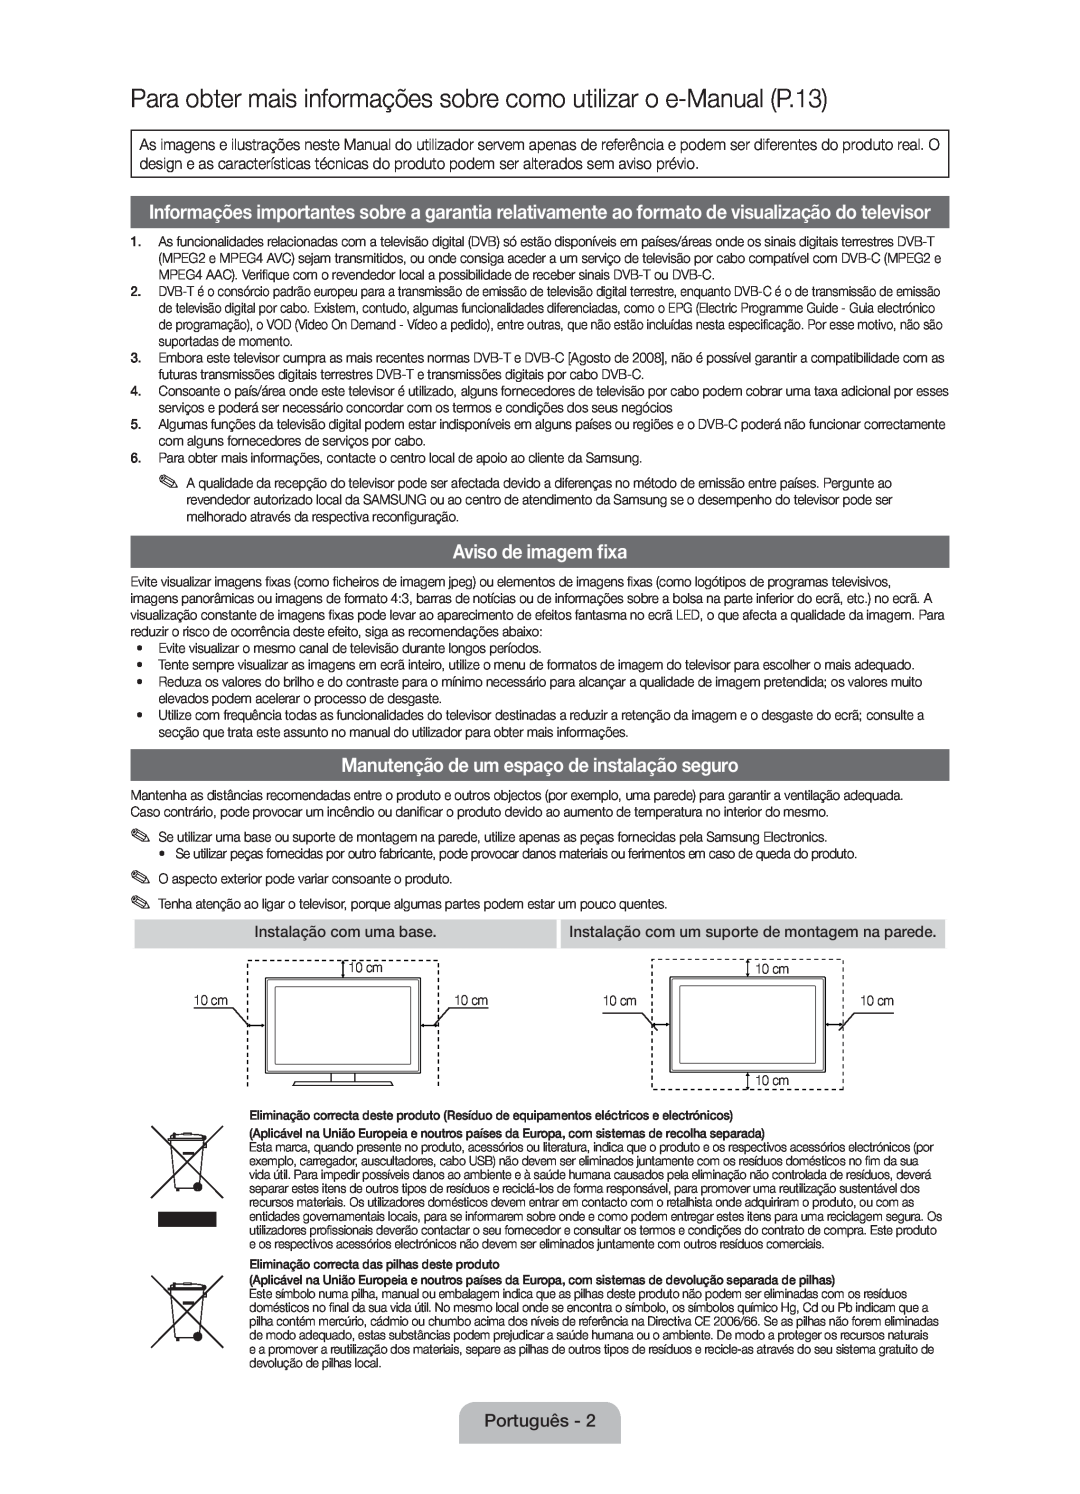 Samsung UE46D5000PWXZG manual Para obter mais informações sobre como utilizar o e-Manual P.13, Aviso de imagem fixa 